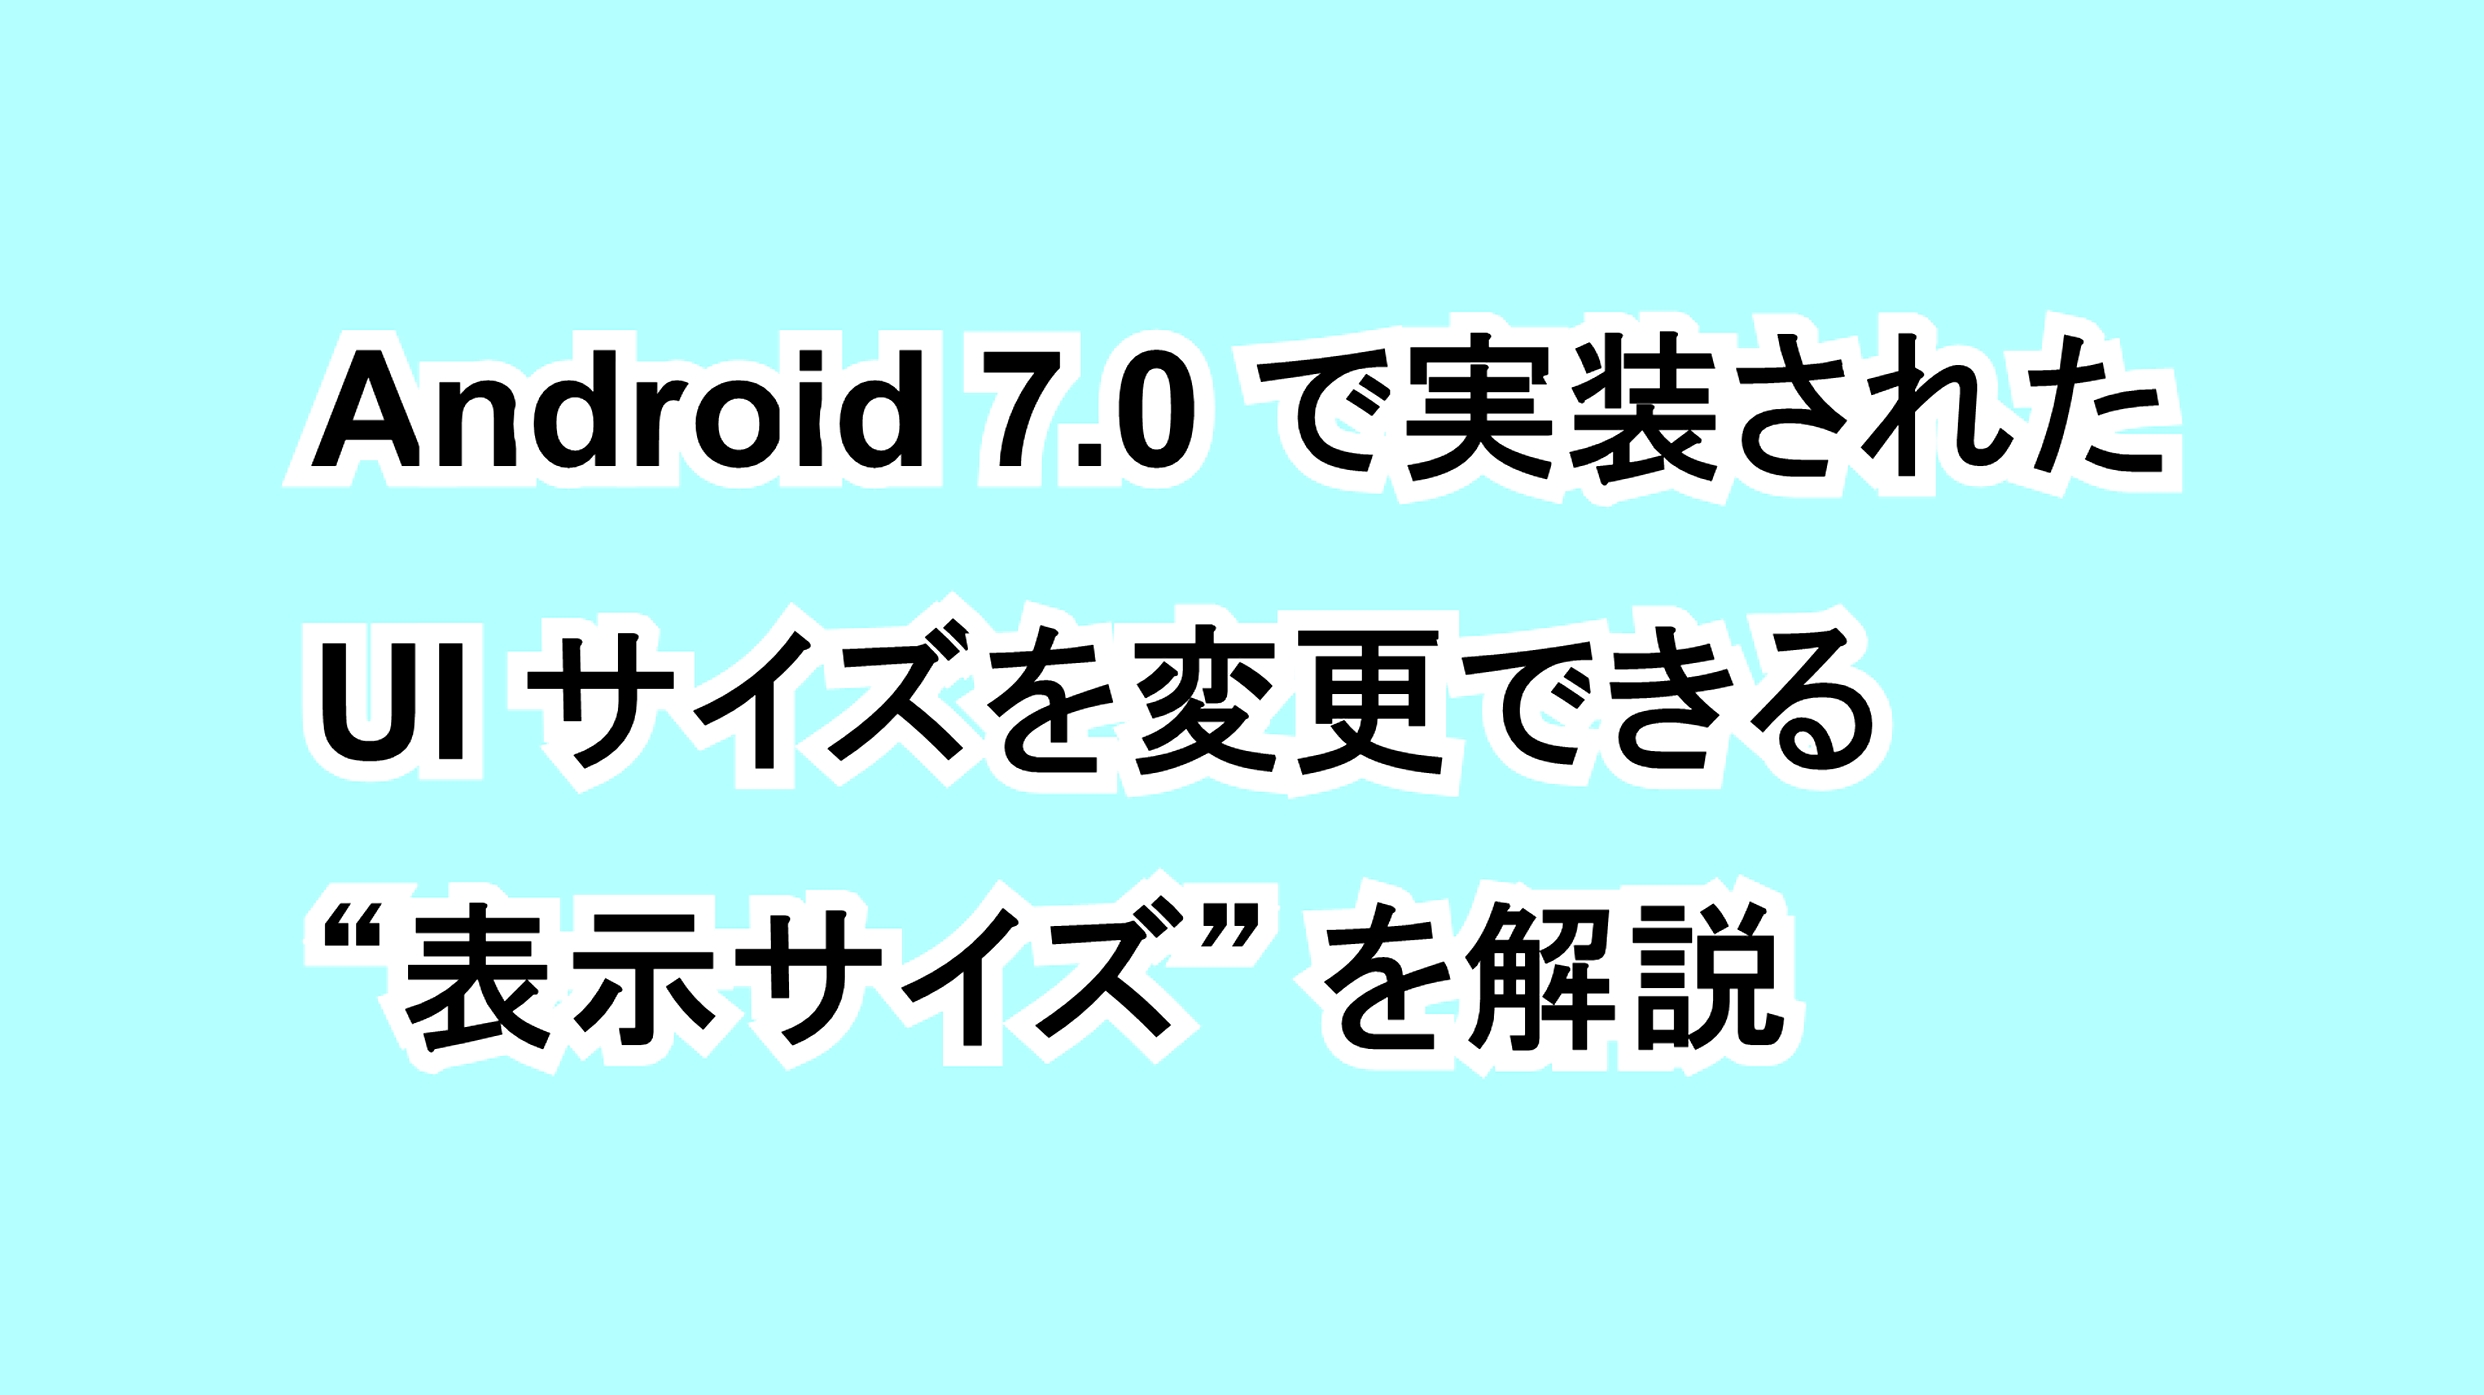 Android 7.0で実装されたUIサイズを変更できる“表示サイズ”を解説